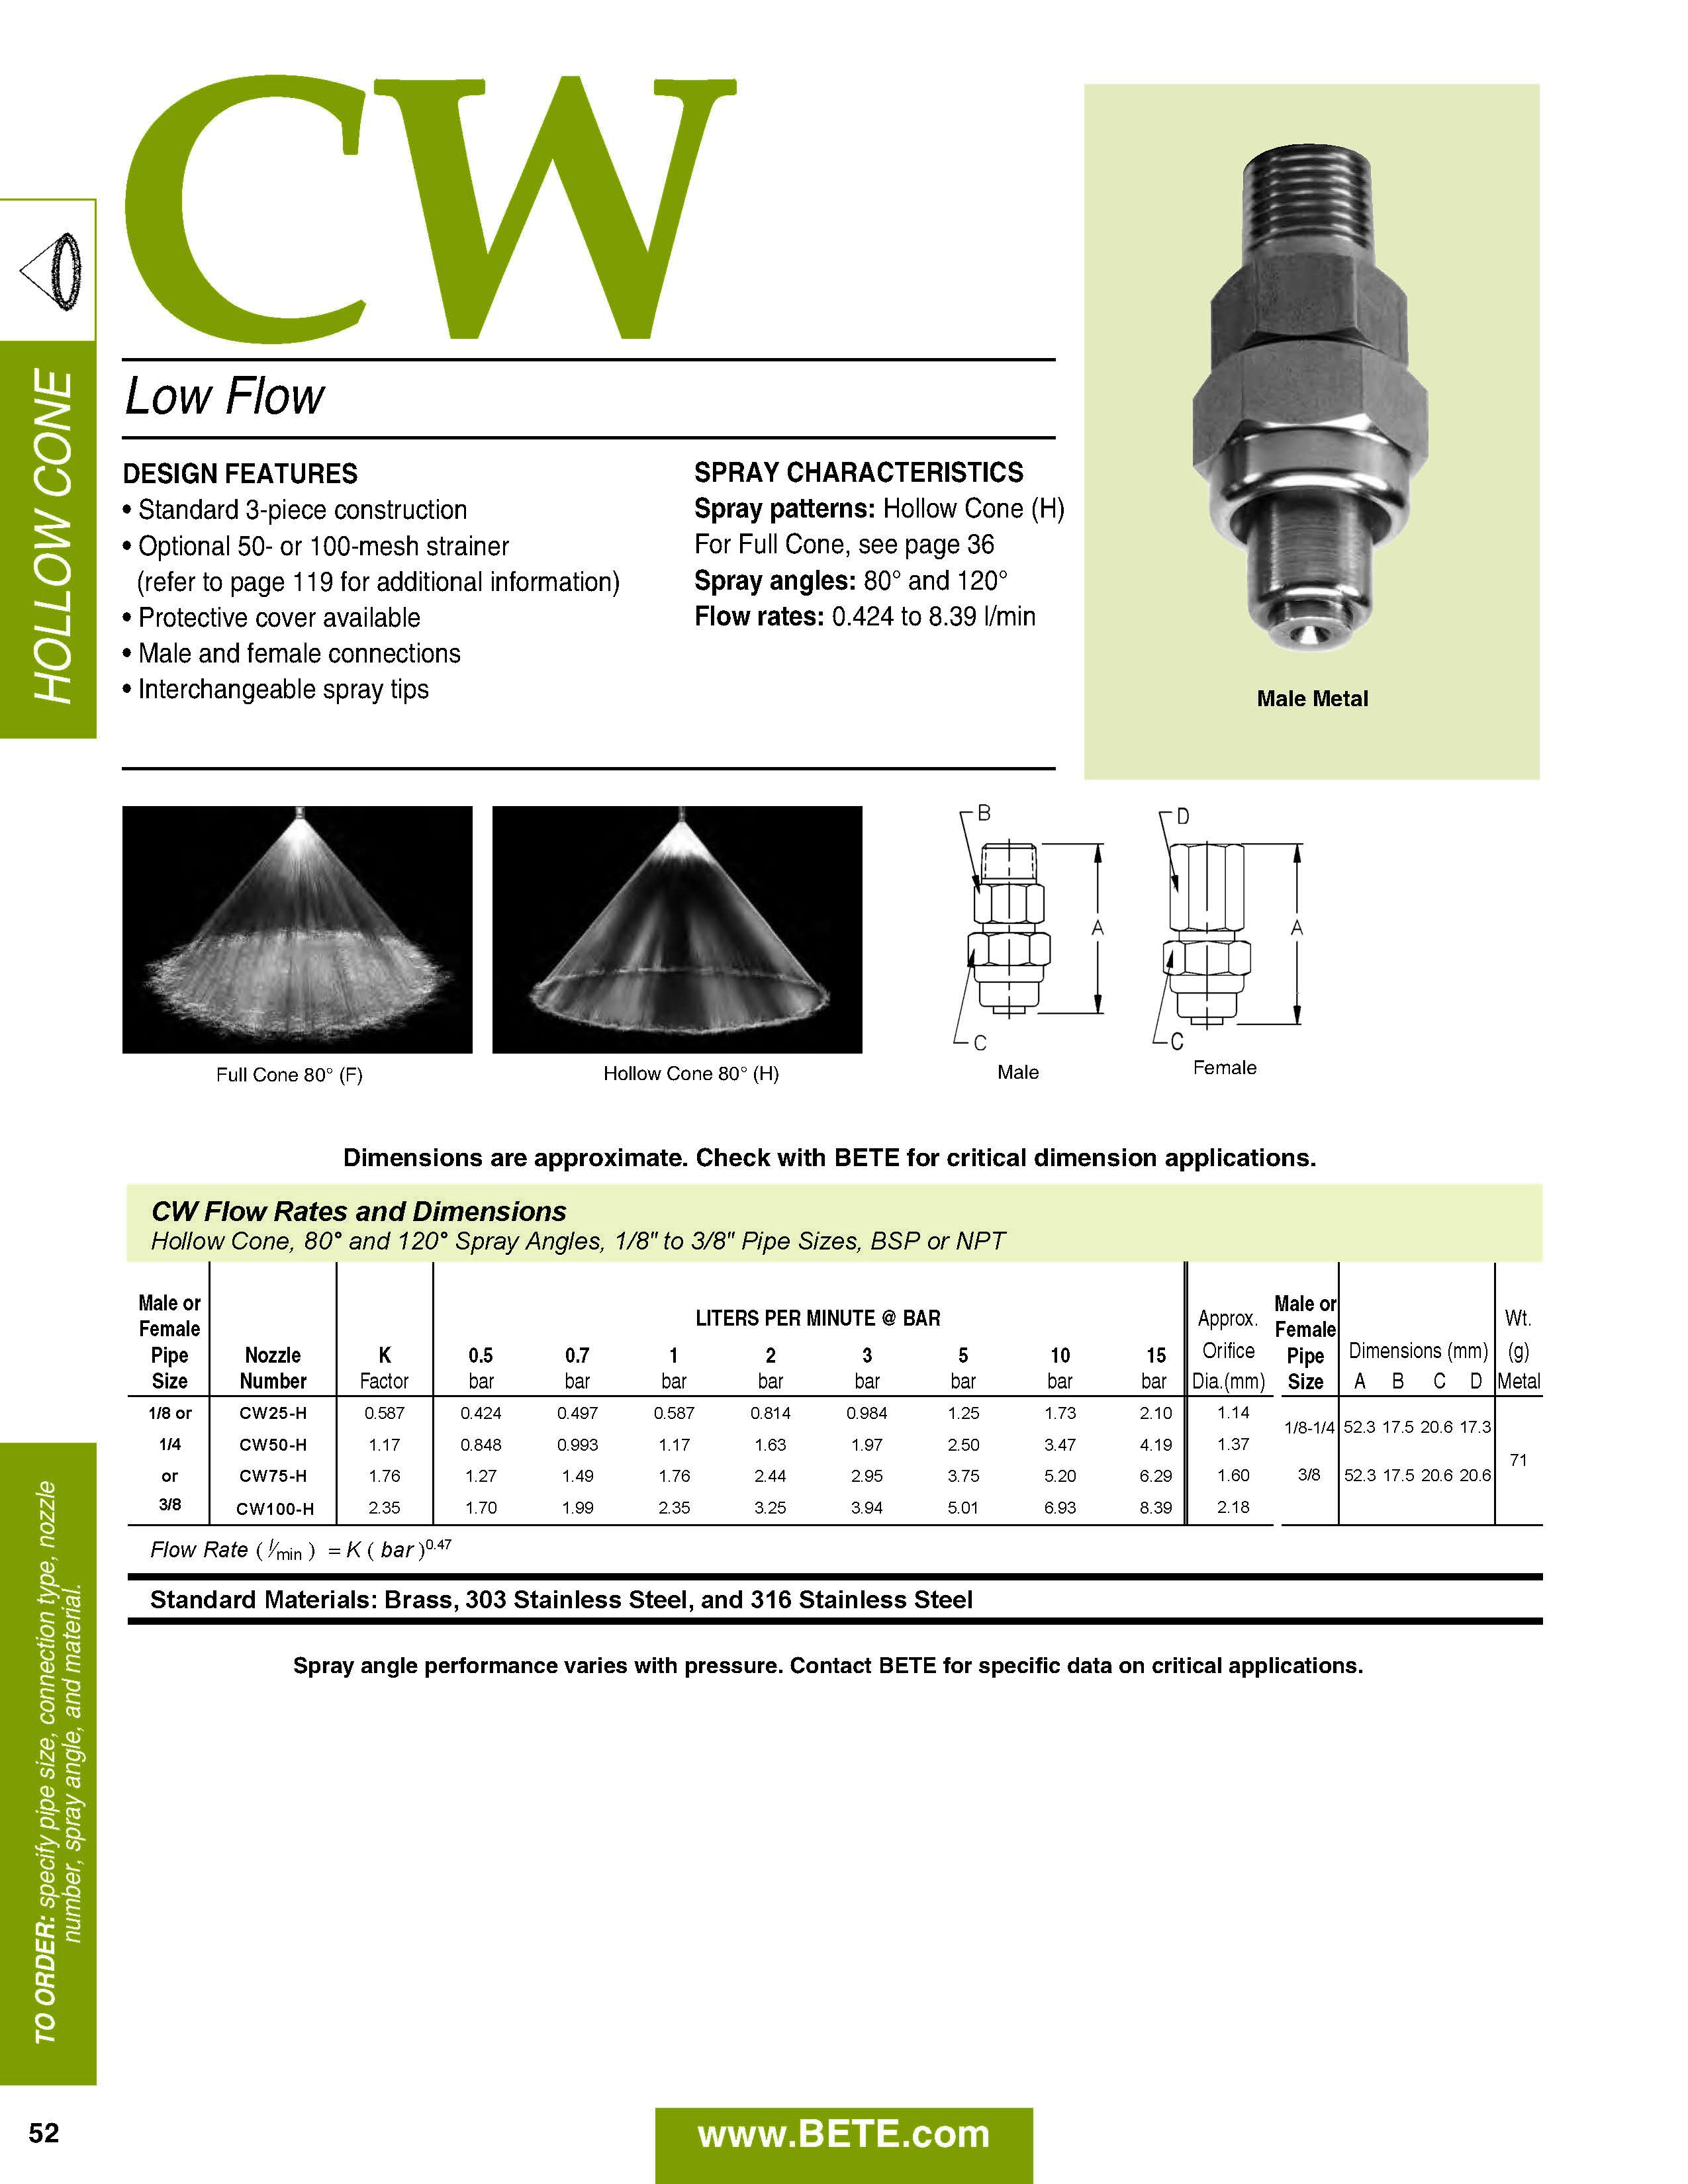 BETE CW Hollow Cone Datasheet - Metric